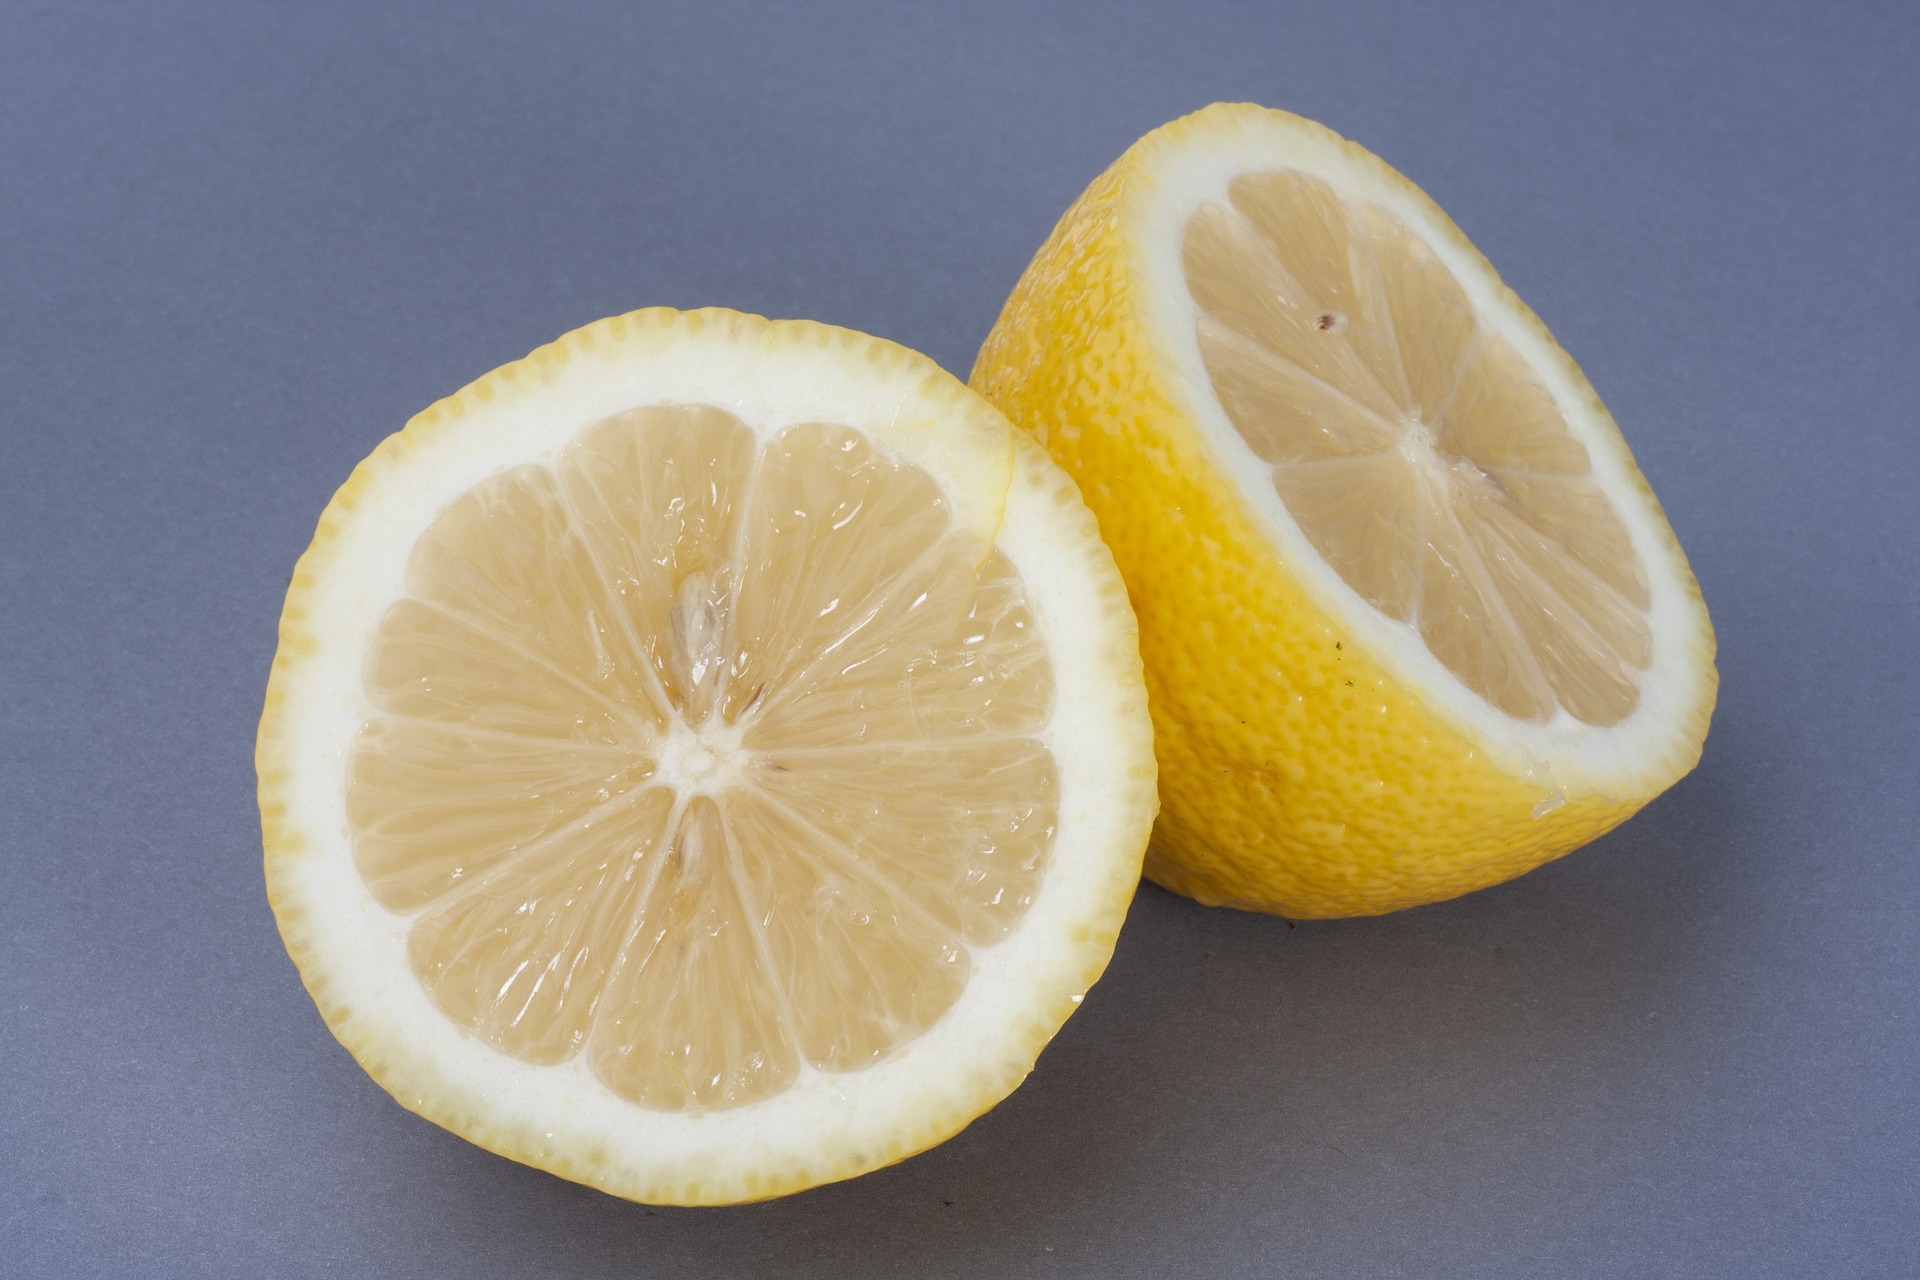 야생에서 채취를 한 레몬나무의 열매인 레몬을 반으로 잘라서 속이 잘 보이게 짙은 하늘색 바닥 위에 두고 찍은 사진